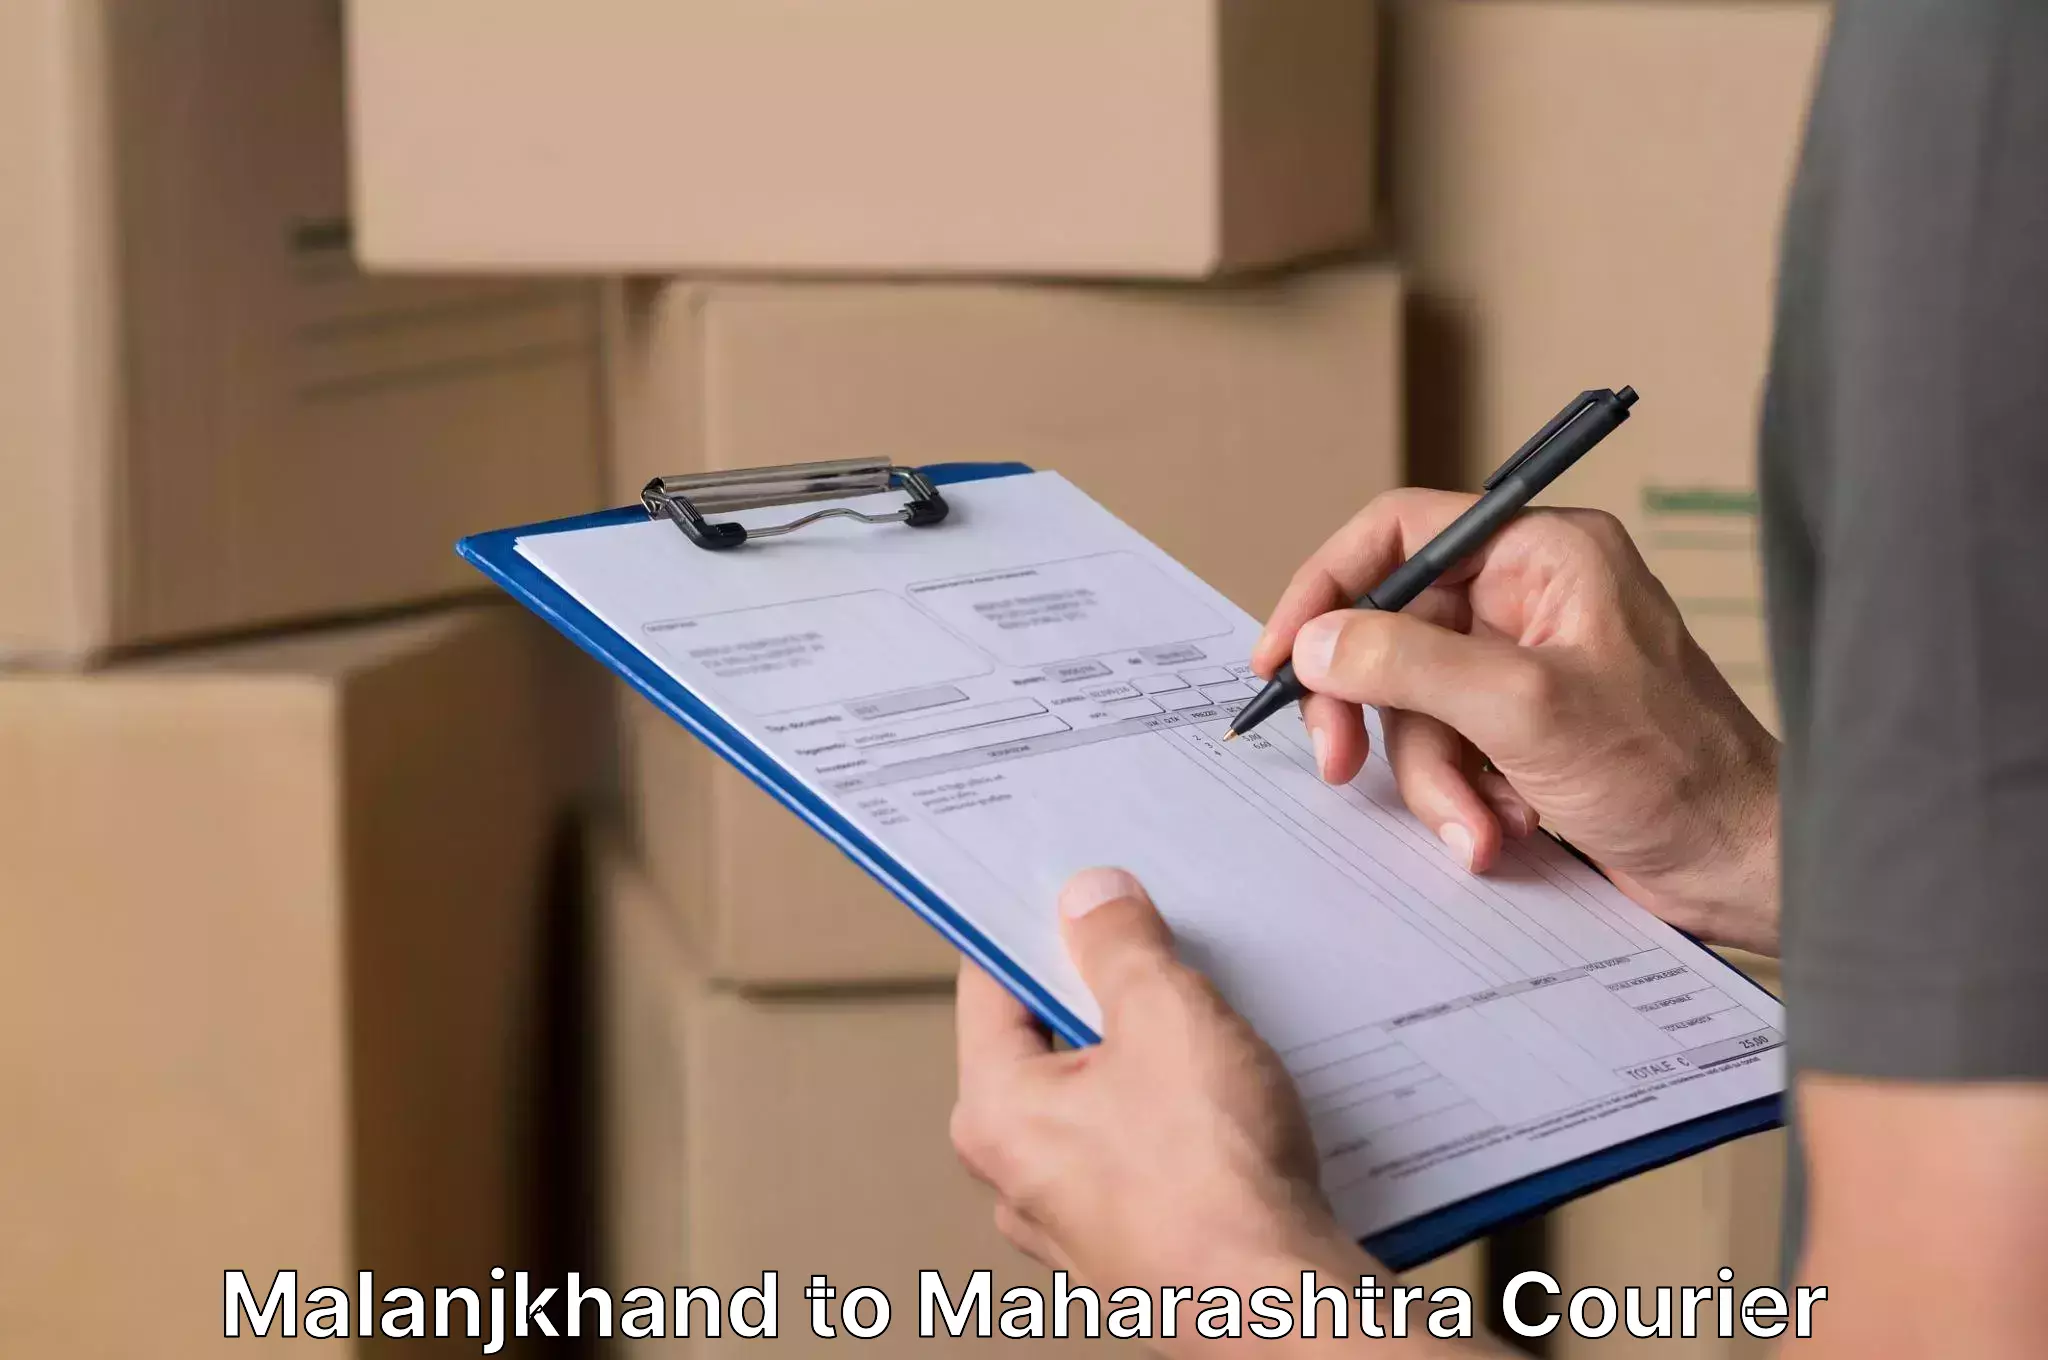 Specialized moving company in Malanjkhand to Maharashtra